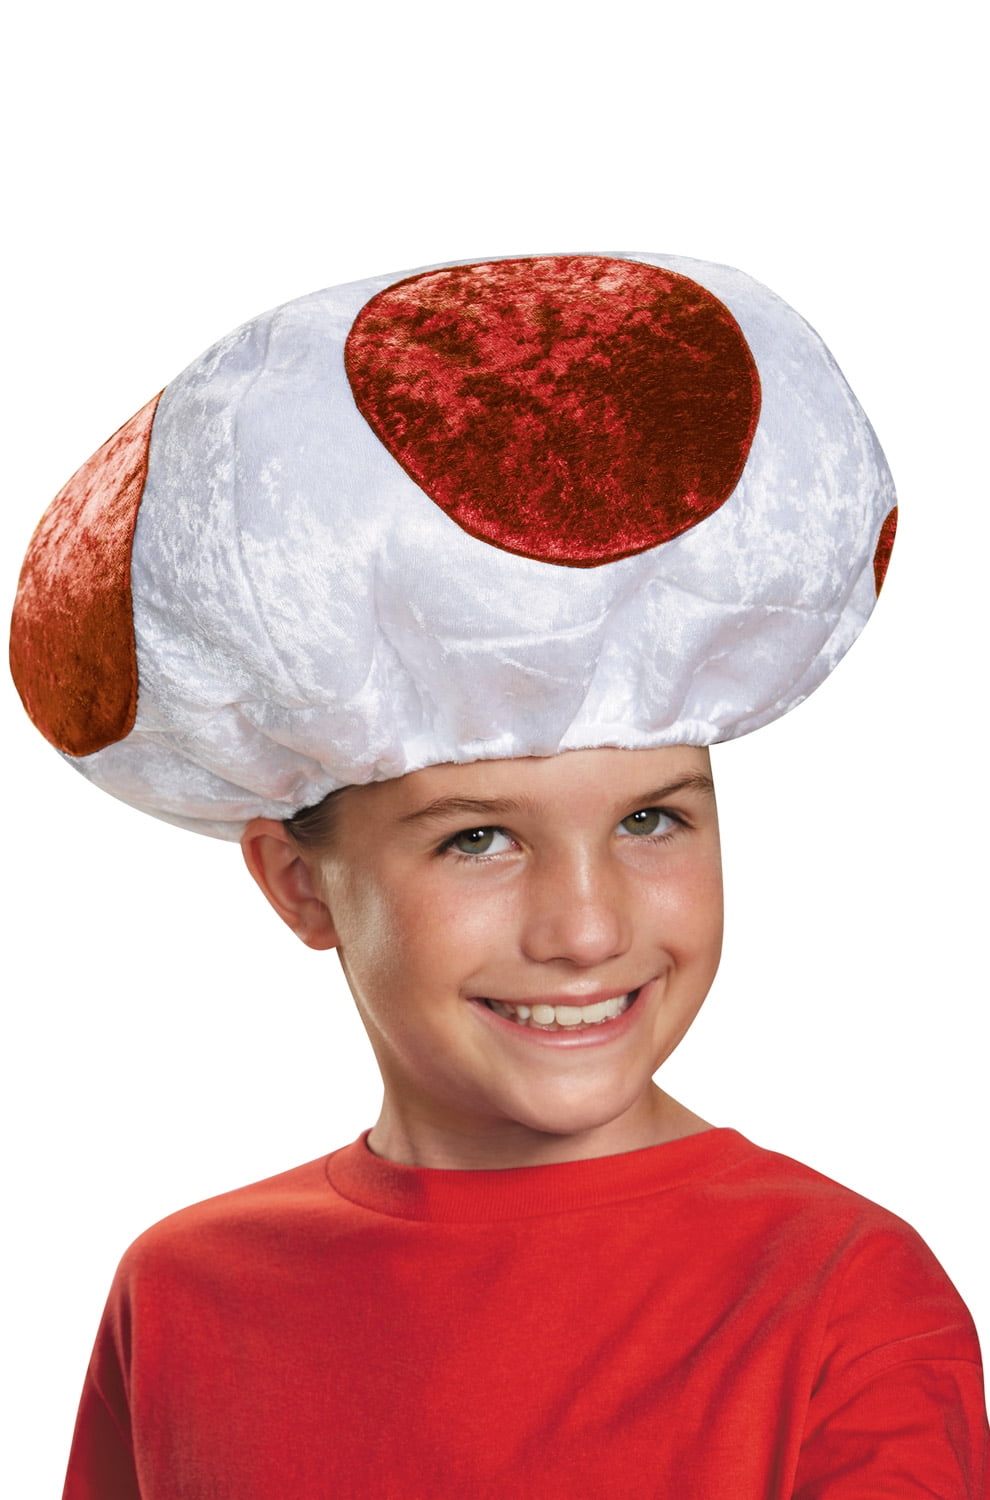 Red Mushroom Plush Hat Gaming Cosplay Costume Cap Super Mario Bros 